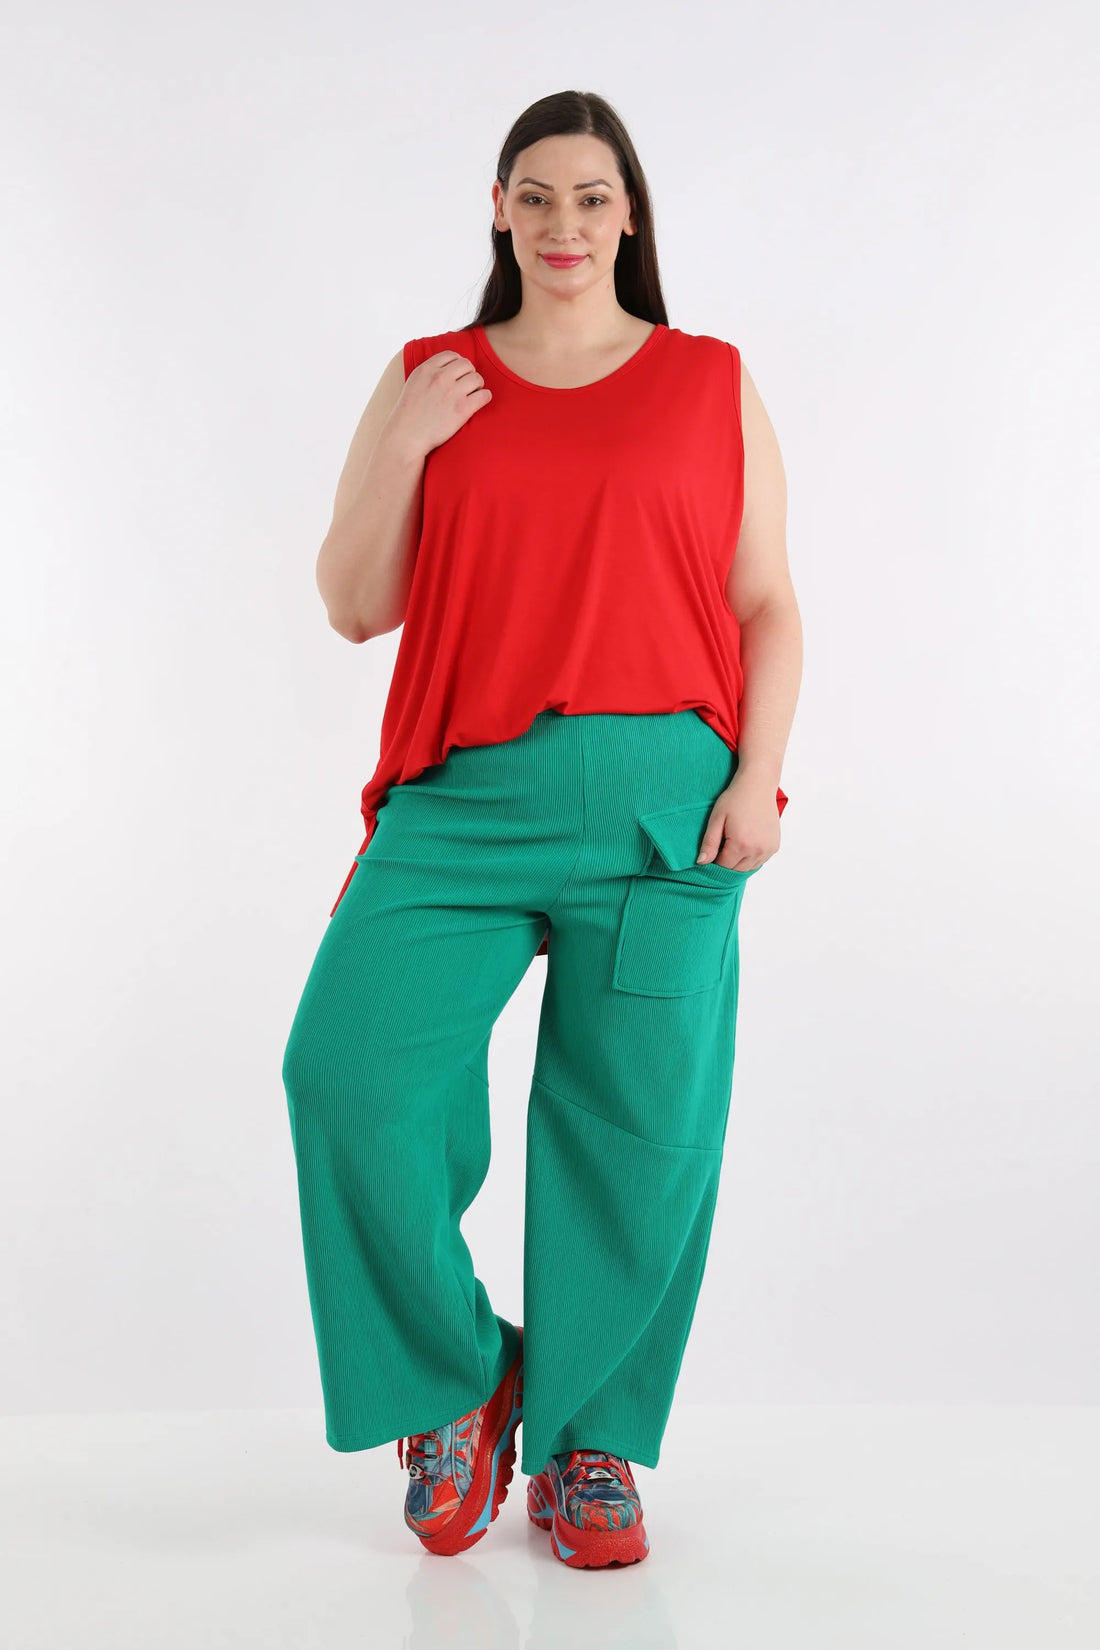 Hose von AKH Fashion aus Baumwolle in gerader Form, 1252.06907, Grün, Unifarben, Schick